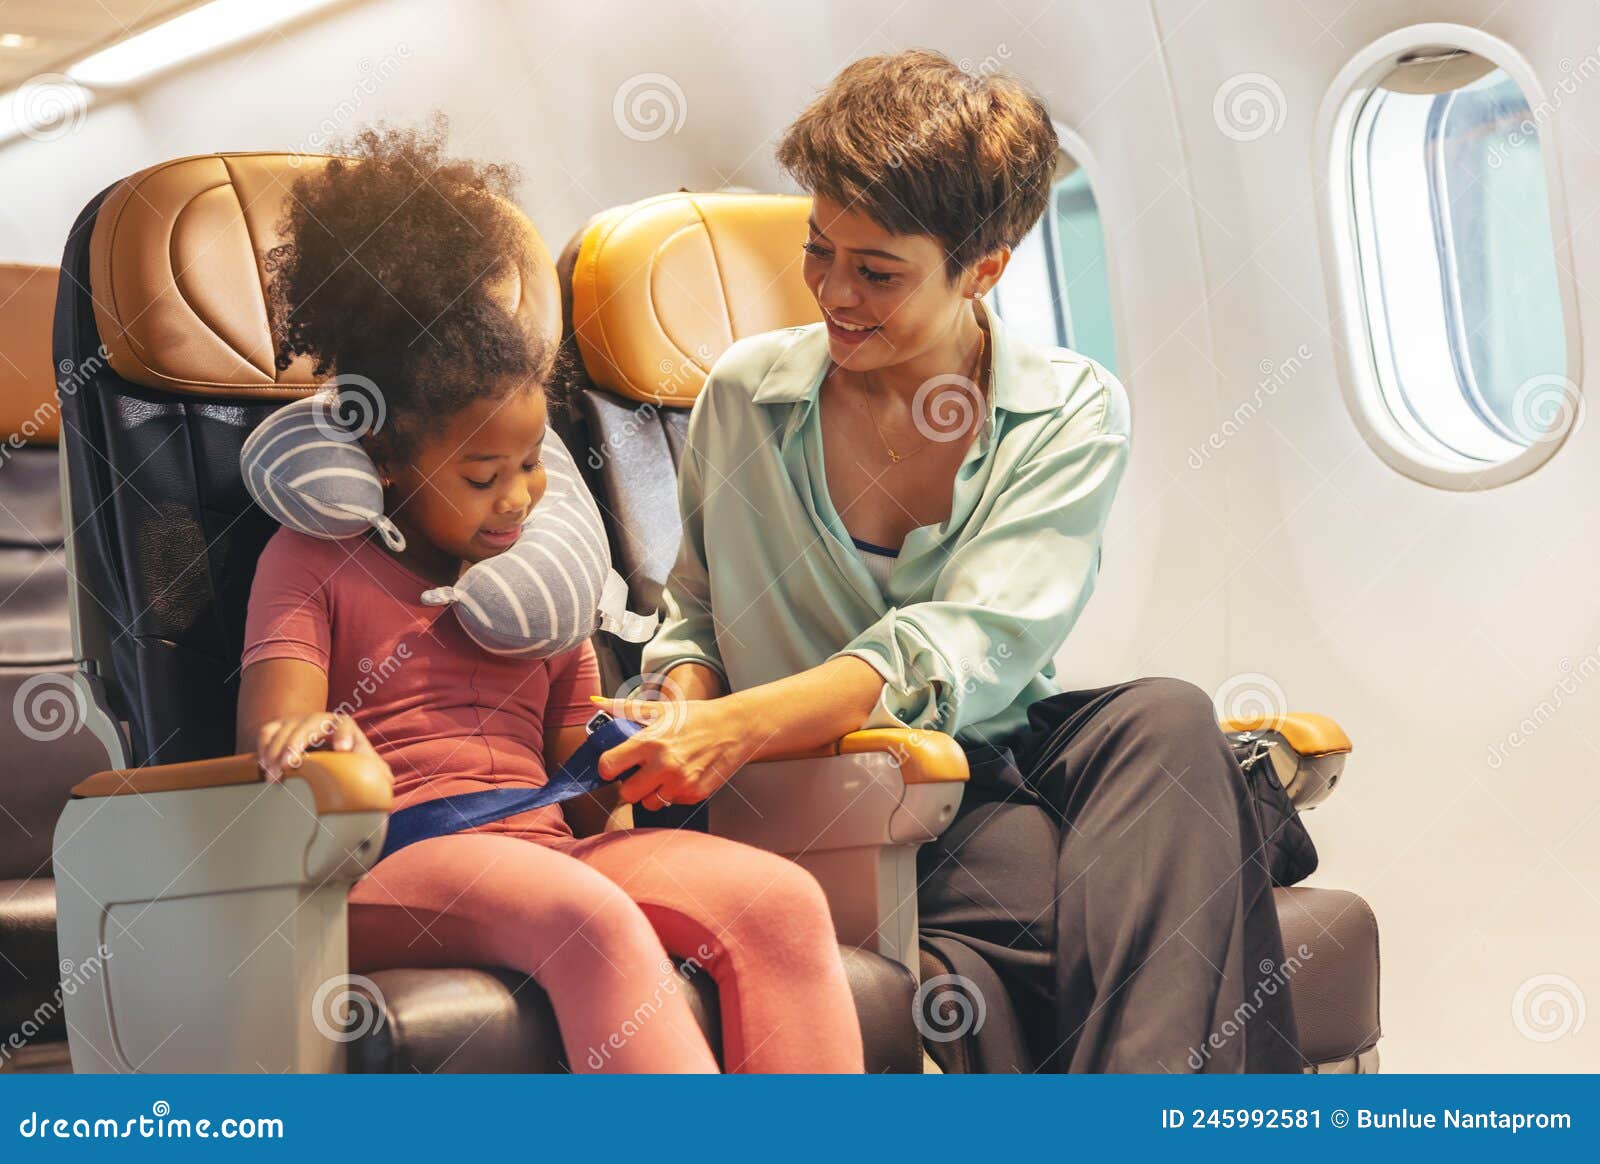 La Ceinture De Sécurité Pour Enfants Est Fixée Par Maman Image stock -  Image du avion, courroie: 245992581